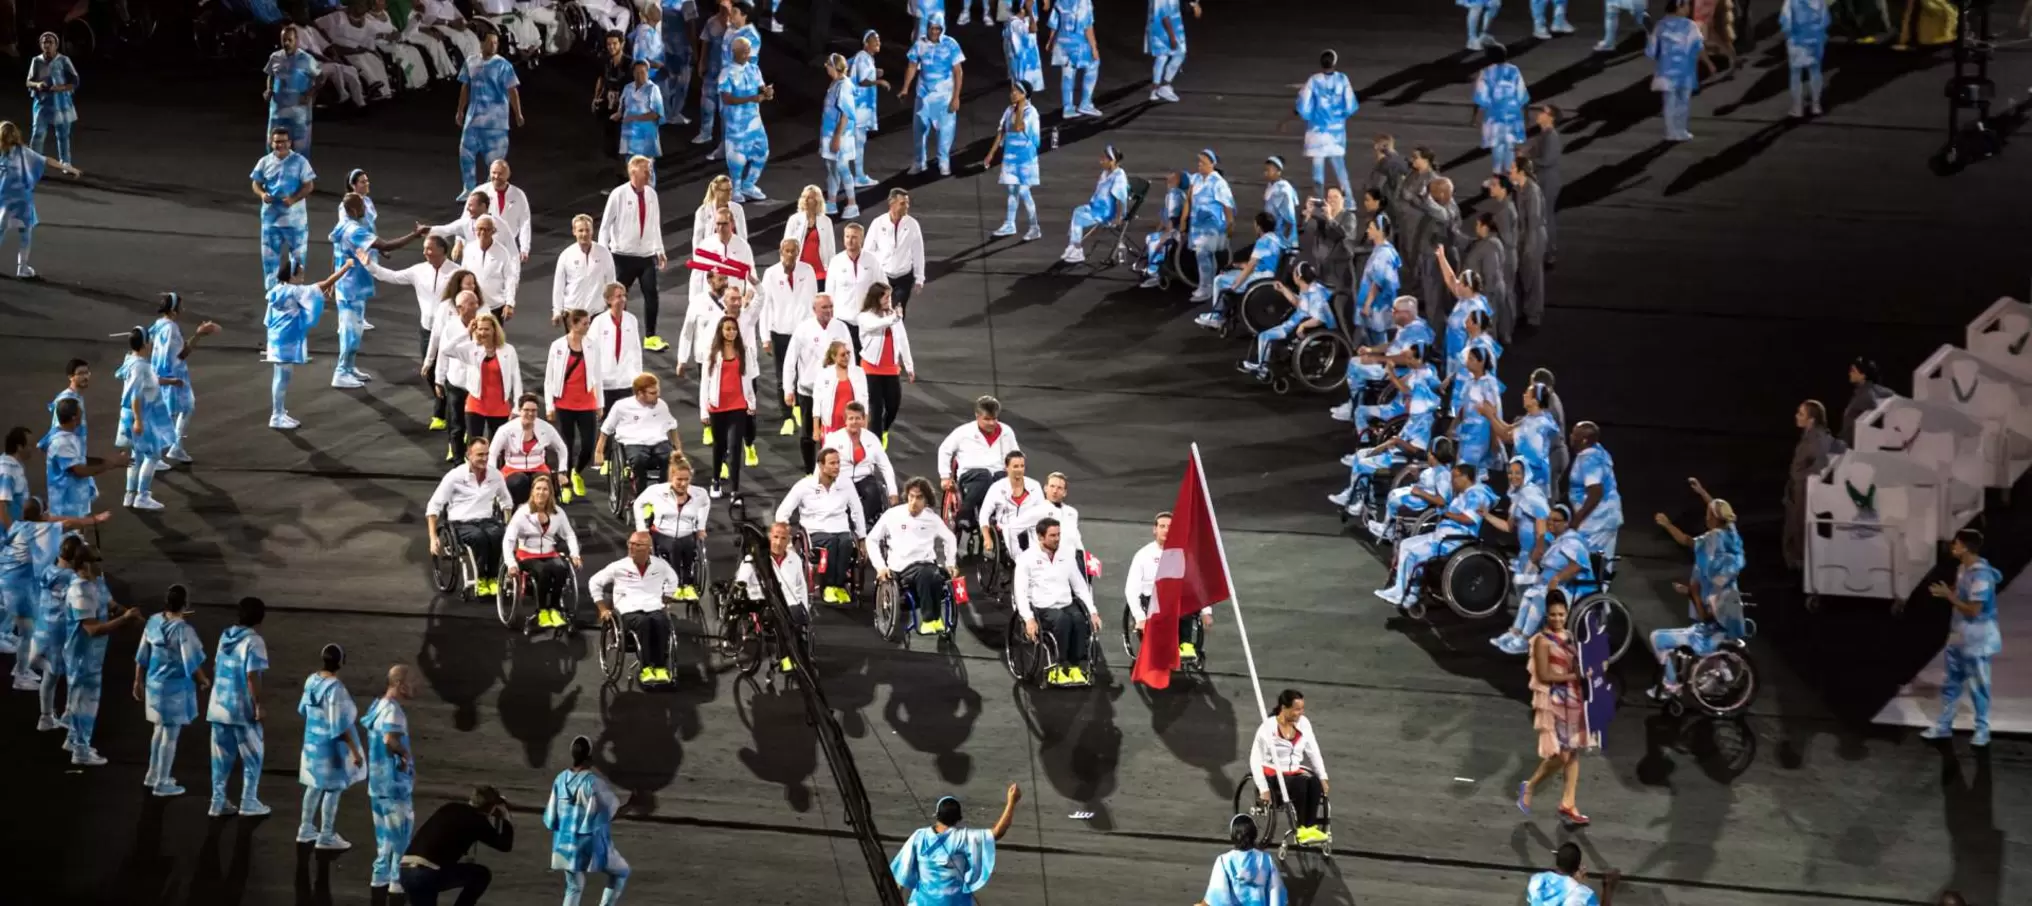 Arrivée de la délégation suisse aux Jeux paralympiques de Rio 